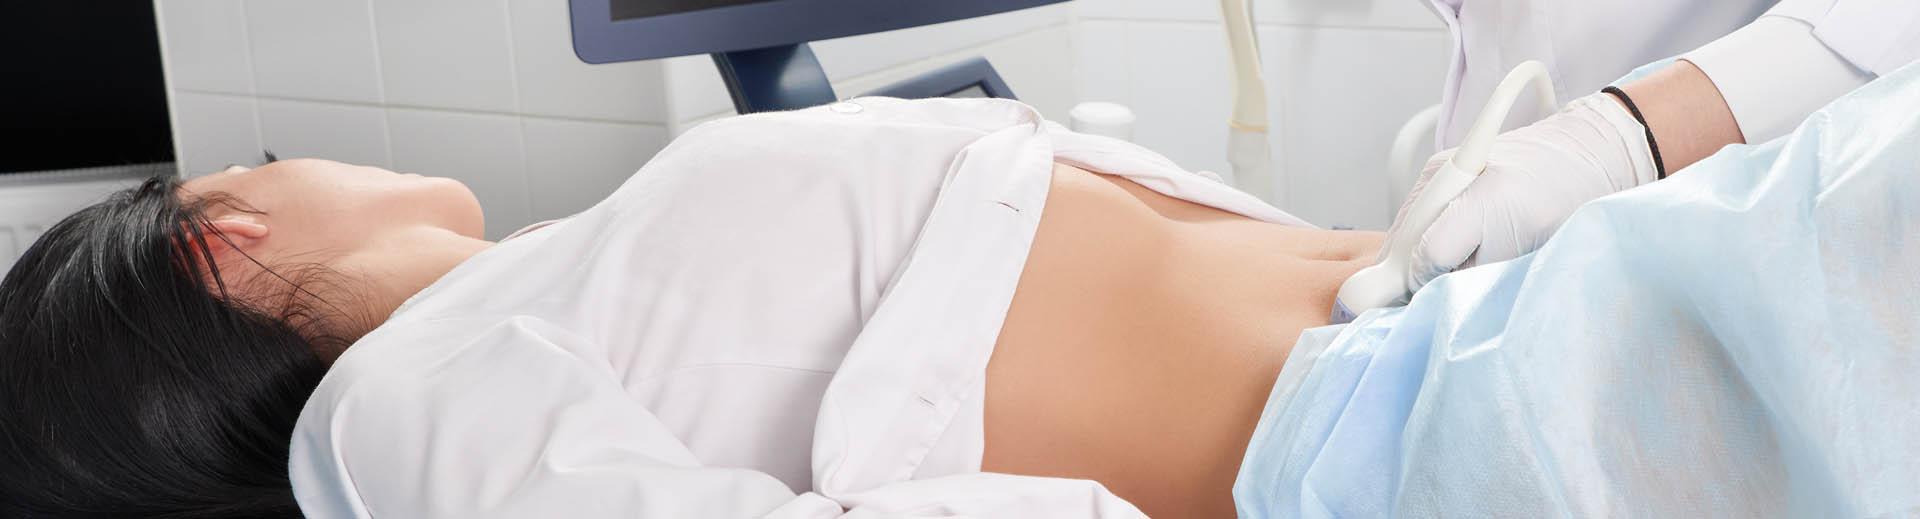 Ärztin untersucht den Bauch einer Patientin mit Ultraschall